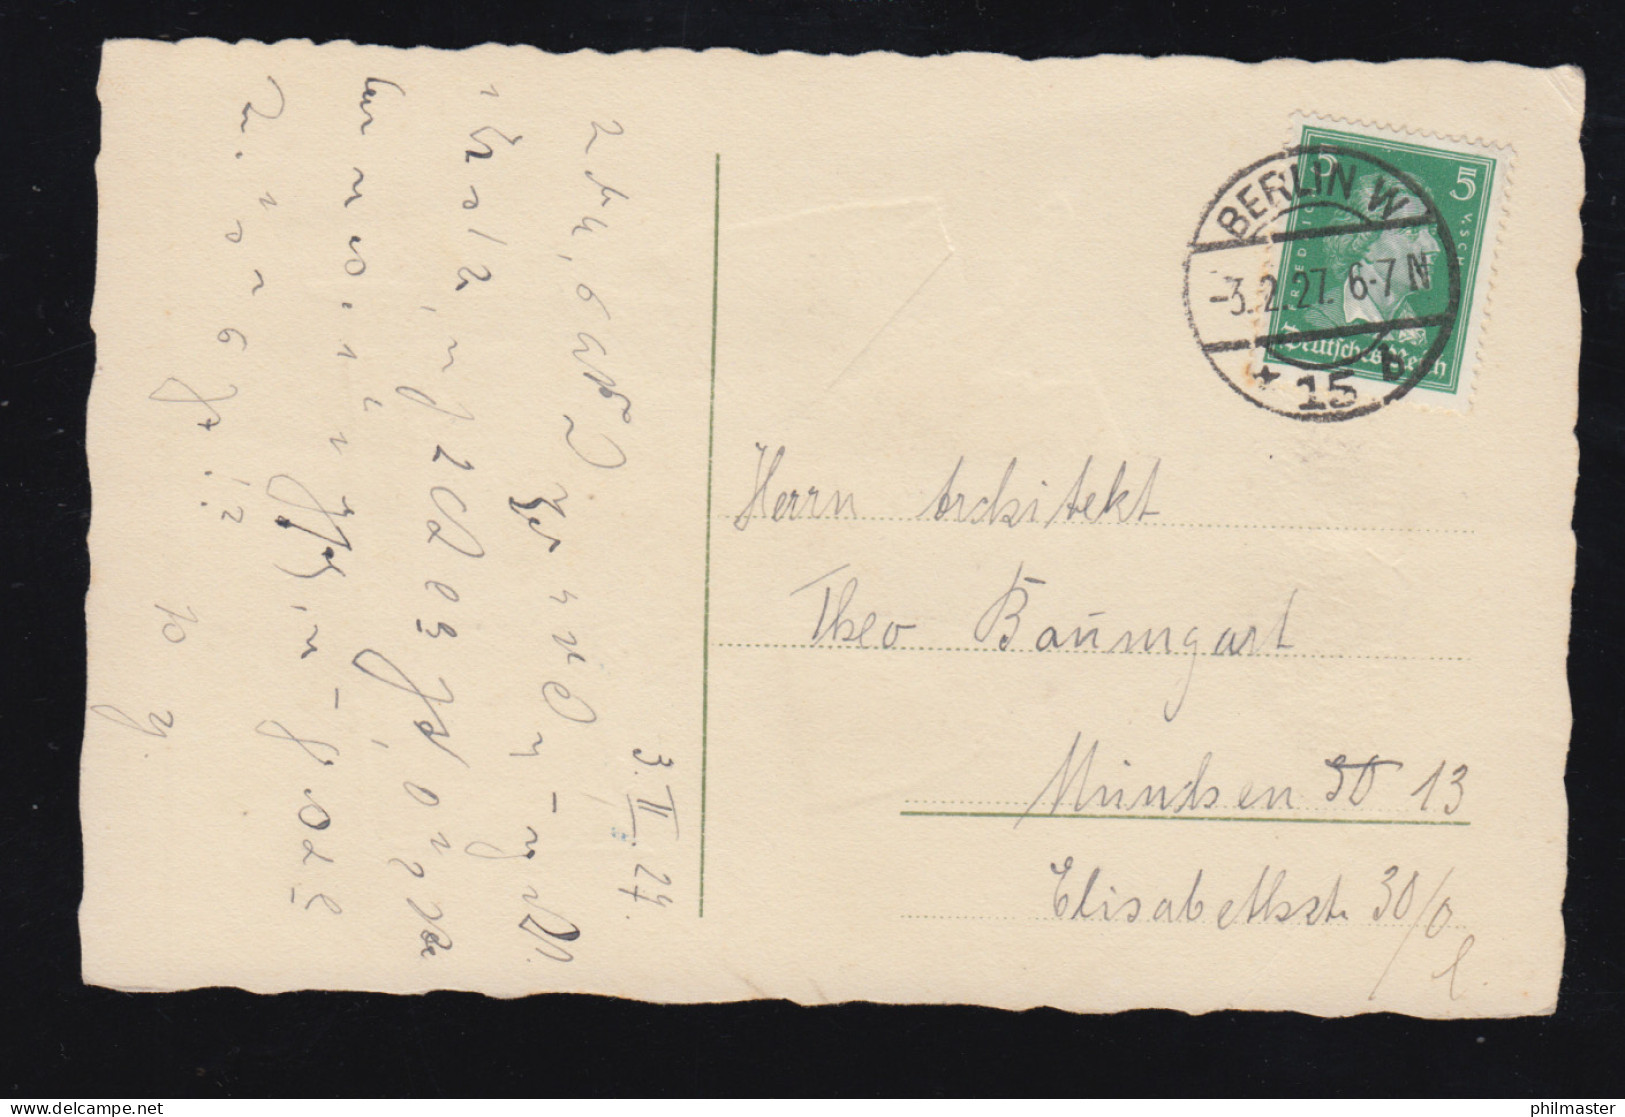 Tiere-AK Hund Bringt Brief Zum Briefkasten, BERLIN W 15b 3.2.1927 - Dogs